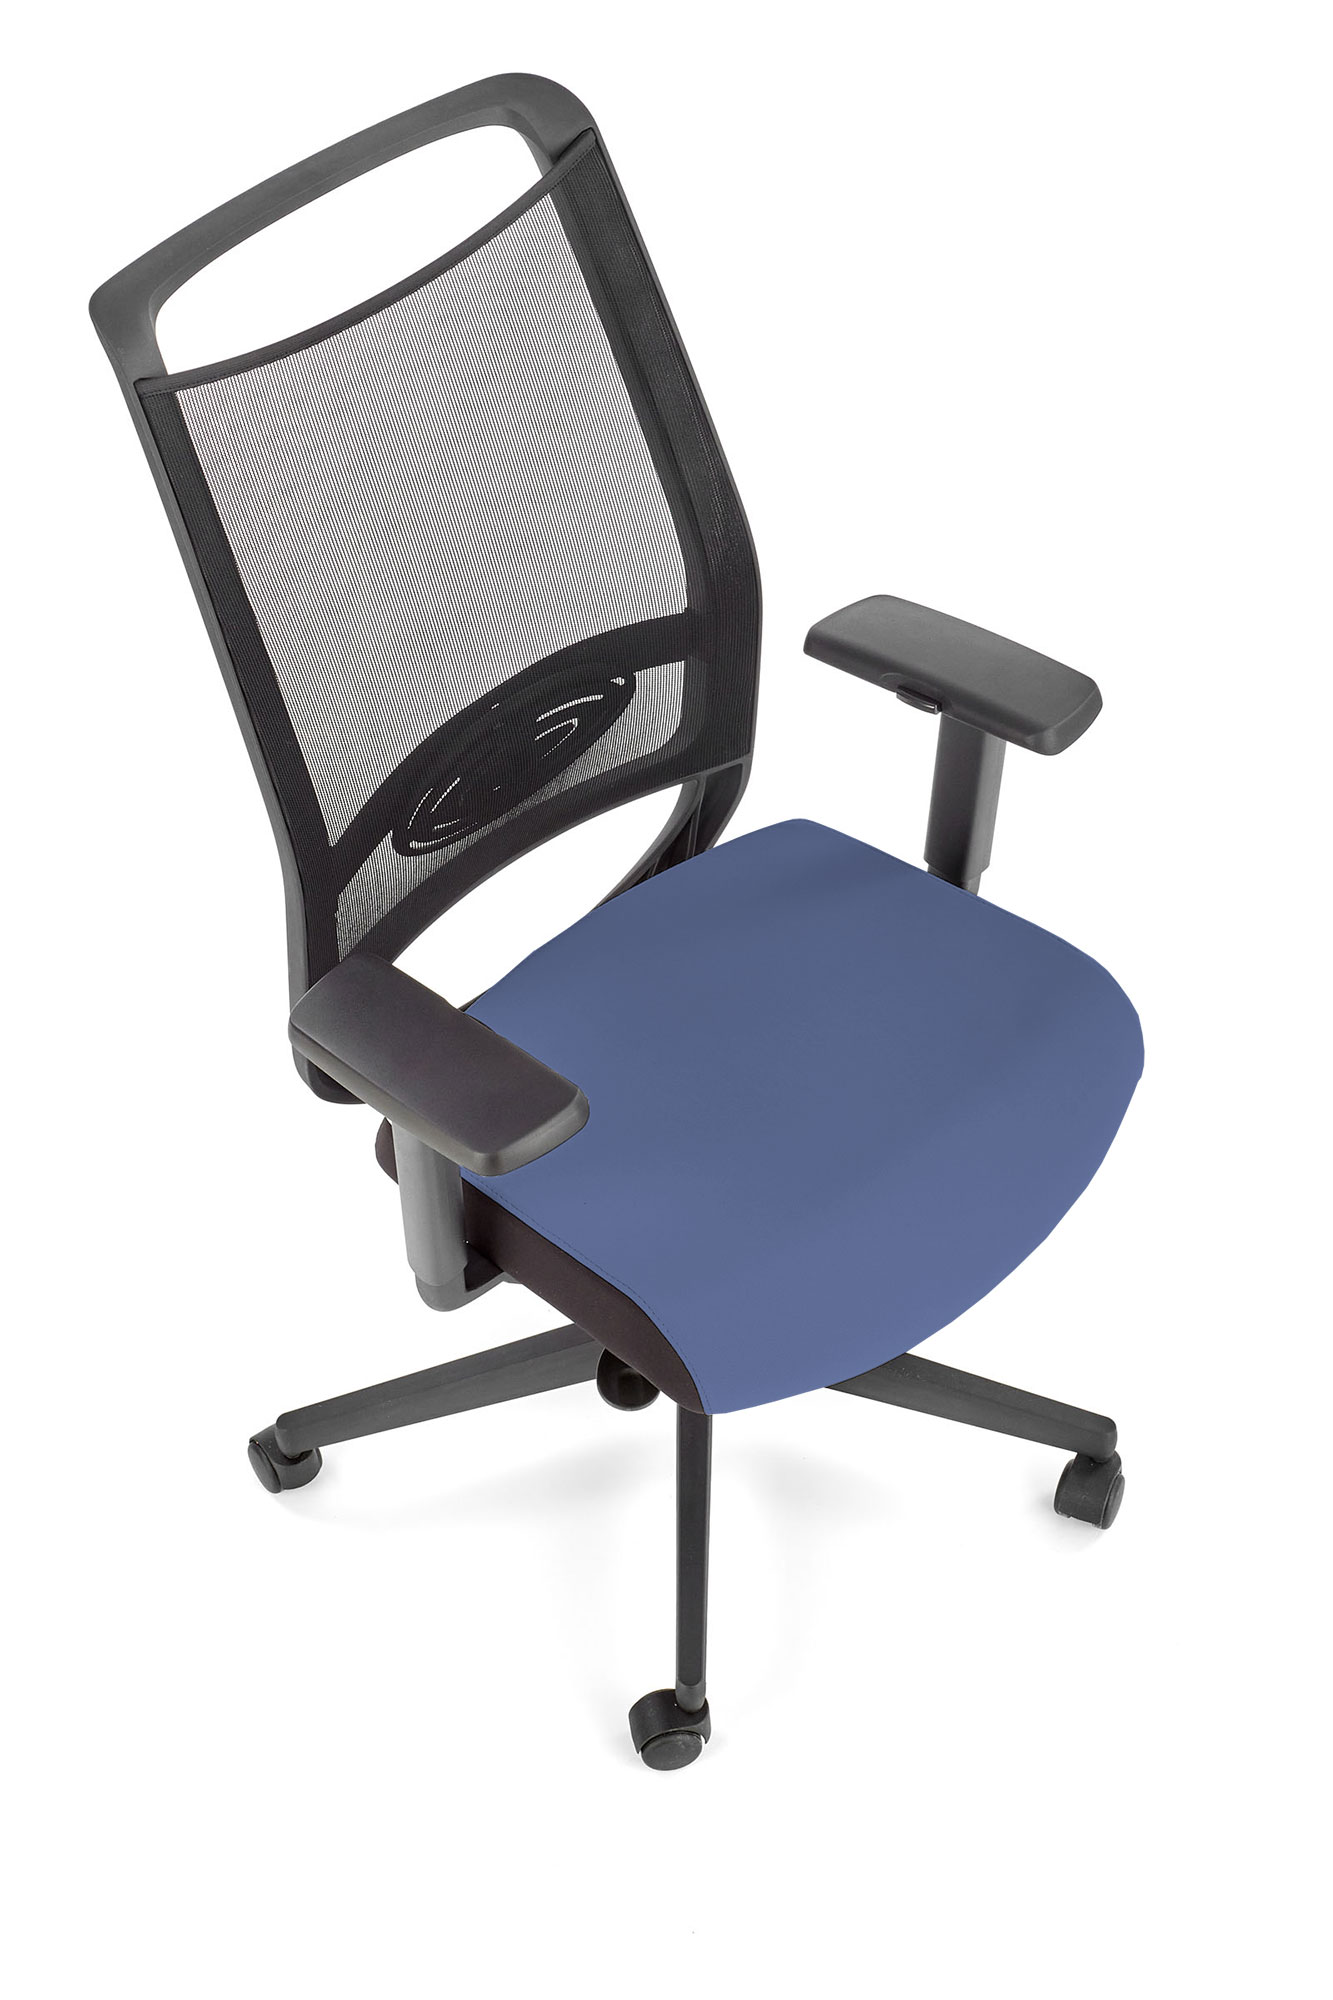 GULIETTA fotel gabinetowy, oparcie - siatka, siedzisko - czarny / niebieski - ERF6026 gulietta fotel gabinetowy, oparcie - siatka, siedzisko - czarny / niebieski - erf6026